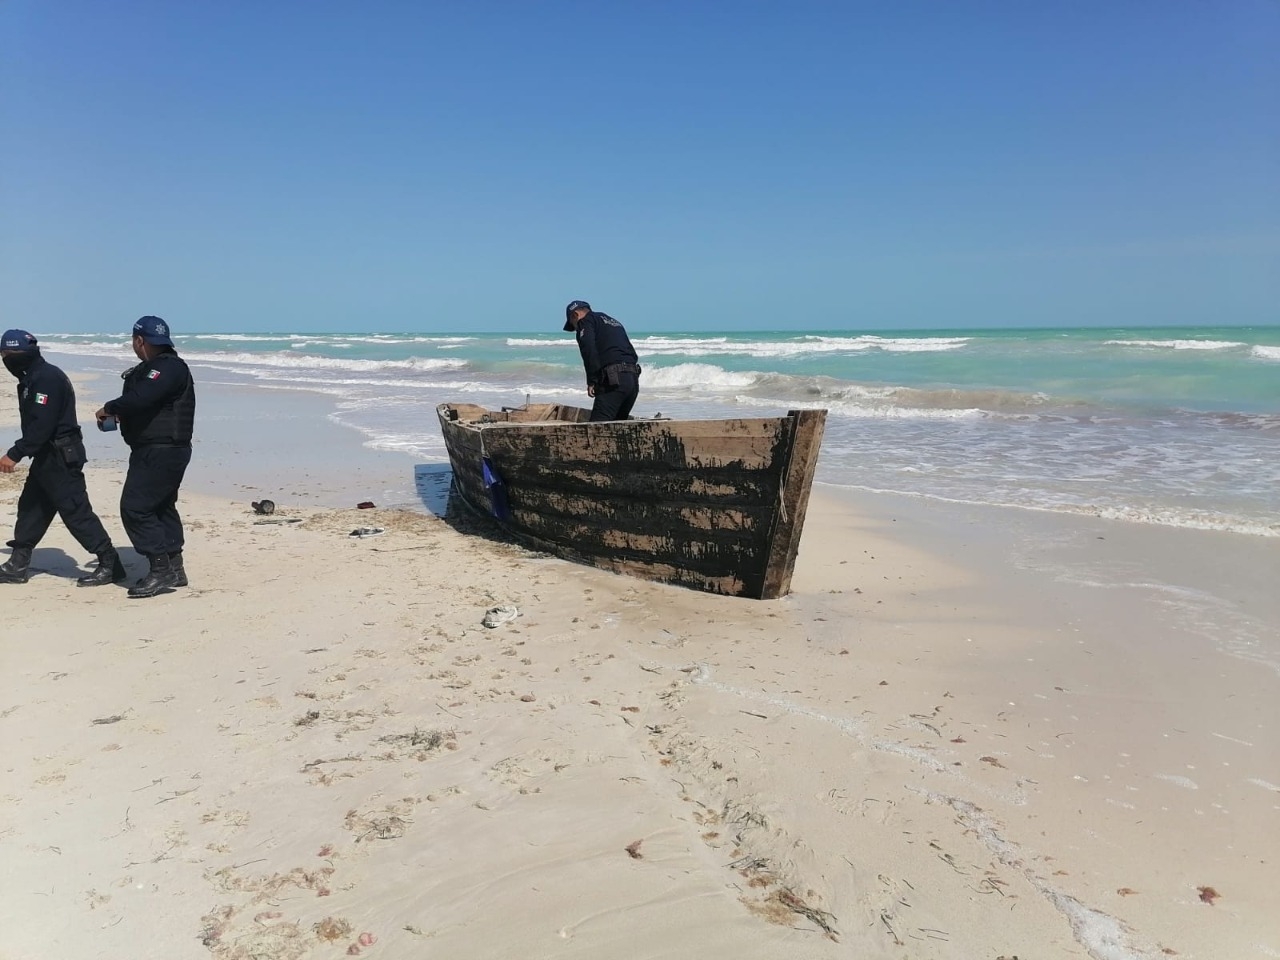 Recala embarcación 'hechiza' en el puerto de El Cuyo, Yucatán